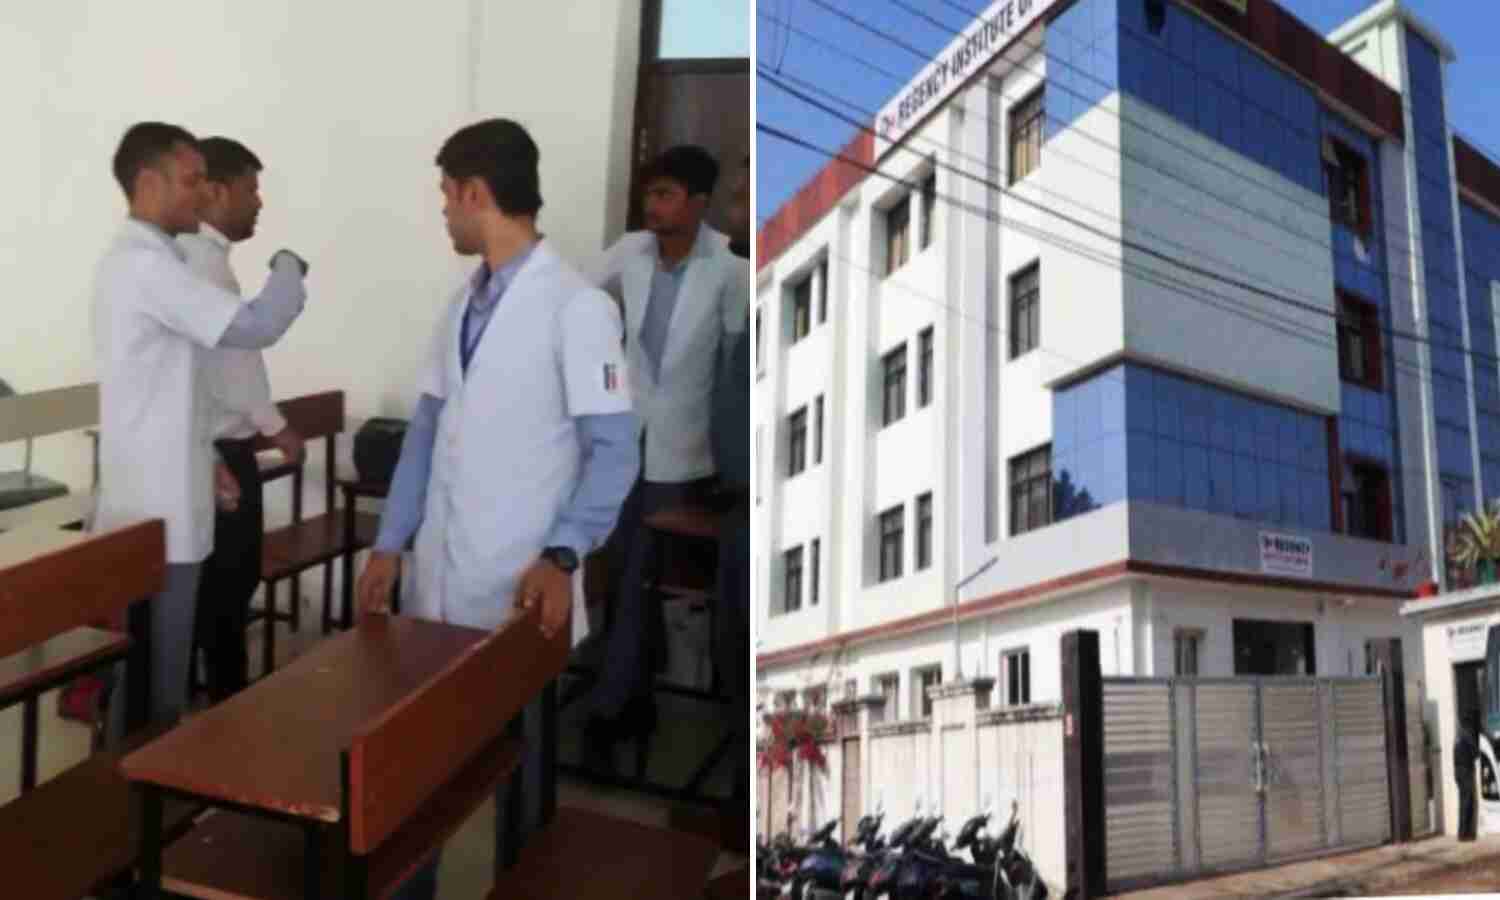 Janjwar Exclusive : कानपुर के रीजेंसी इंस्टिट्यूट ऑफ मेडिकल प्रबंधन पर छात्रों ने लगाया कमरे में बंद कर पीटने का आरोप, मैनेजमेंट ने कहा विवाद का कारण मोबाइल